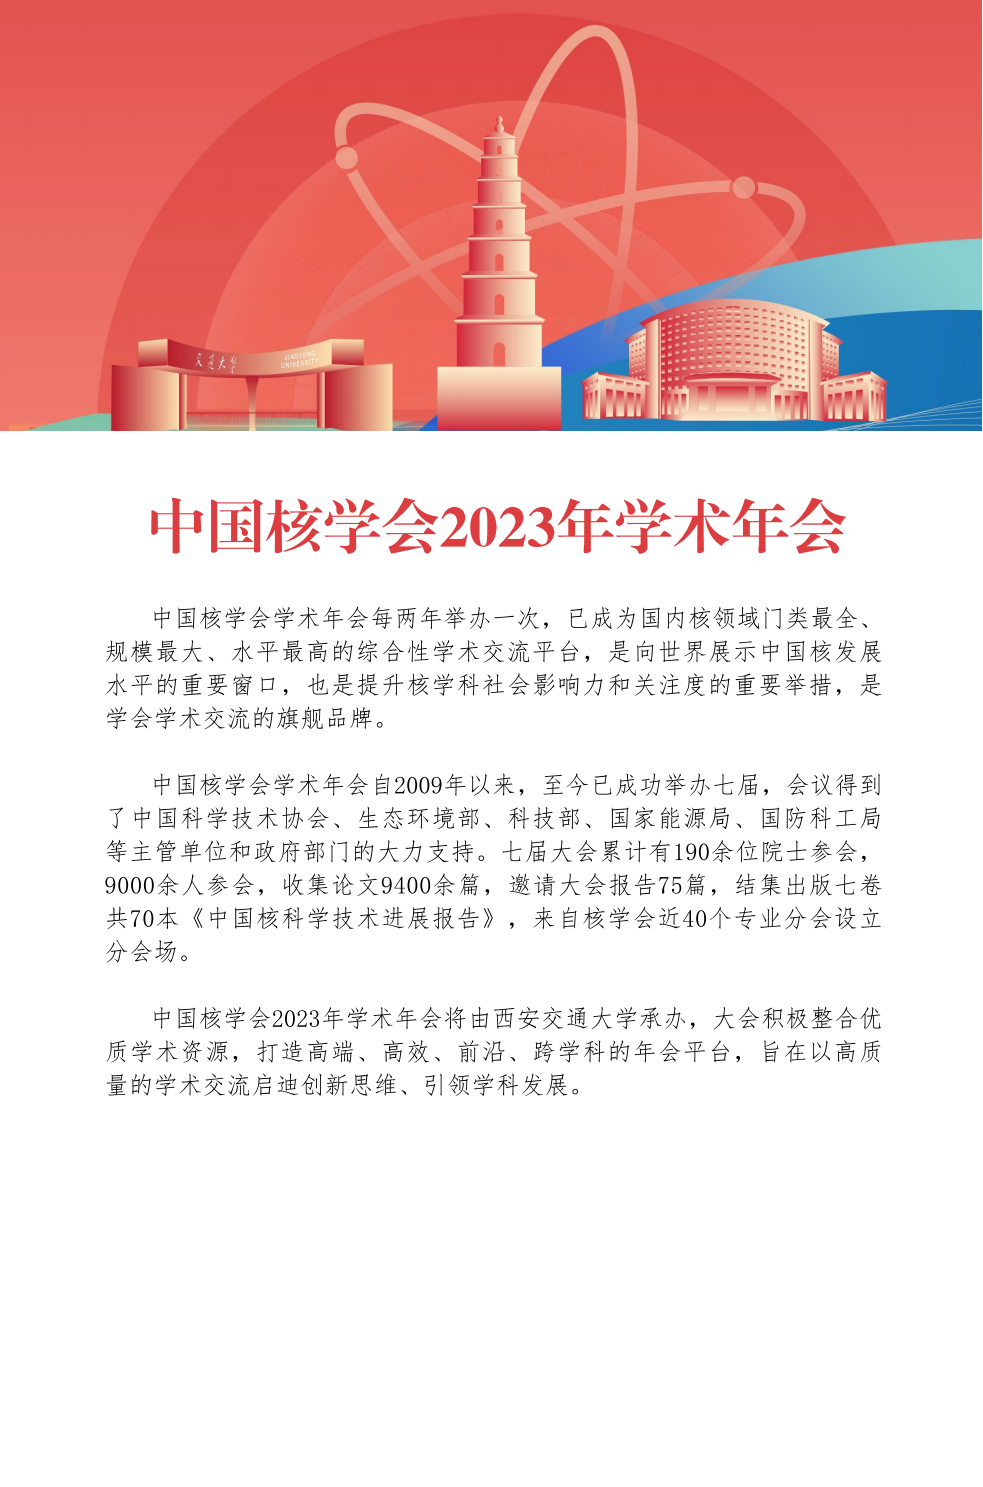 20230811-中国核学会2023年学术年会招展手册V5_01.png